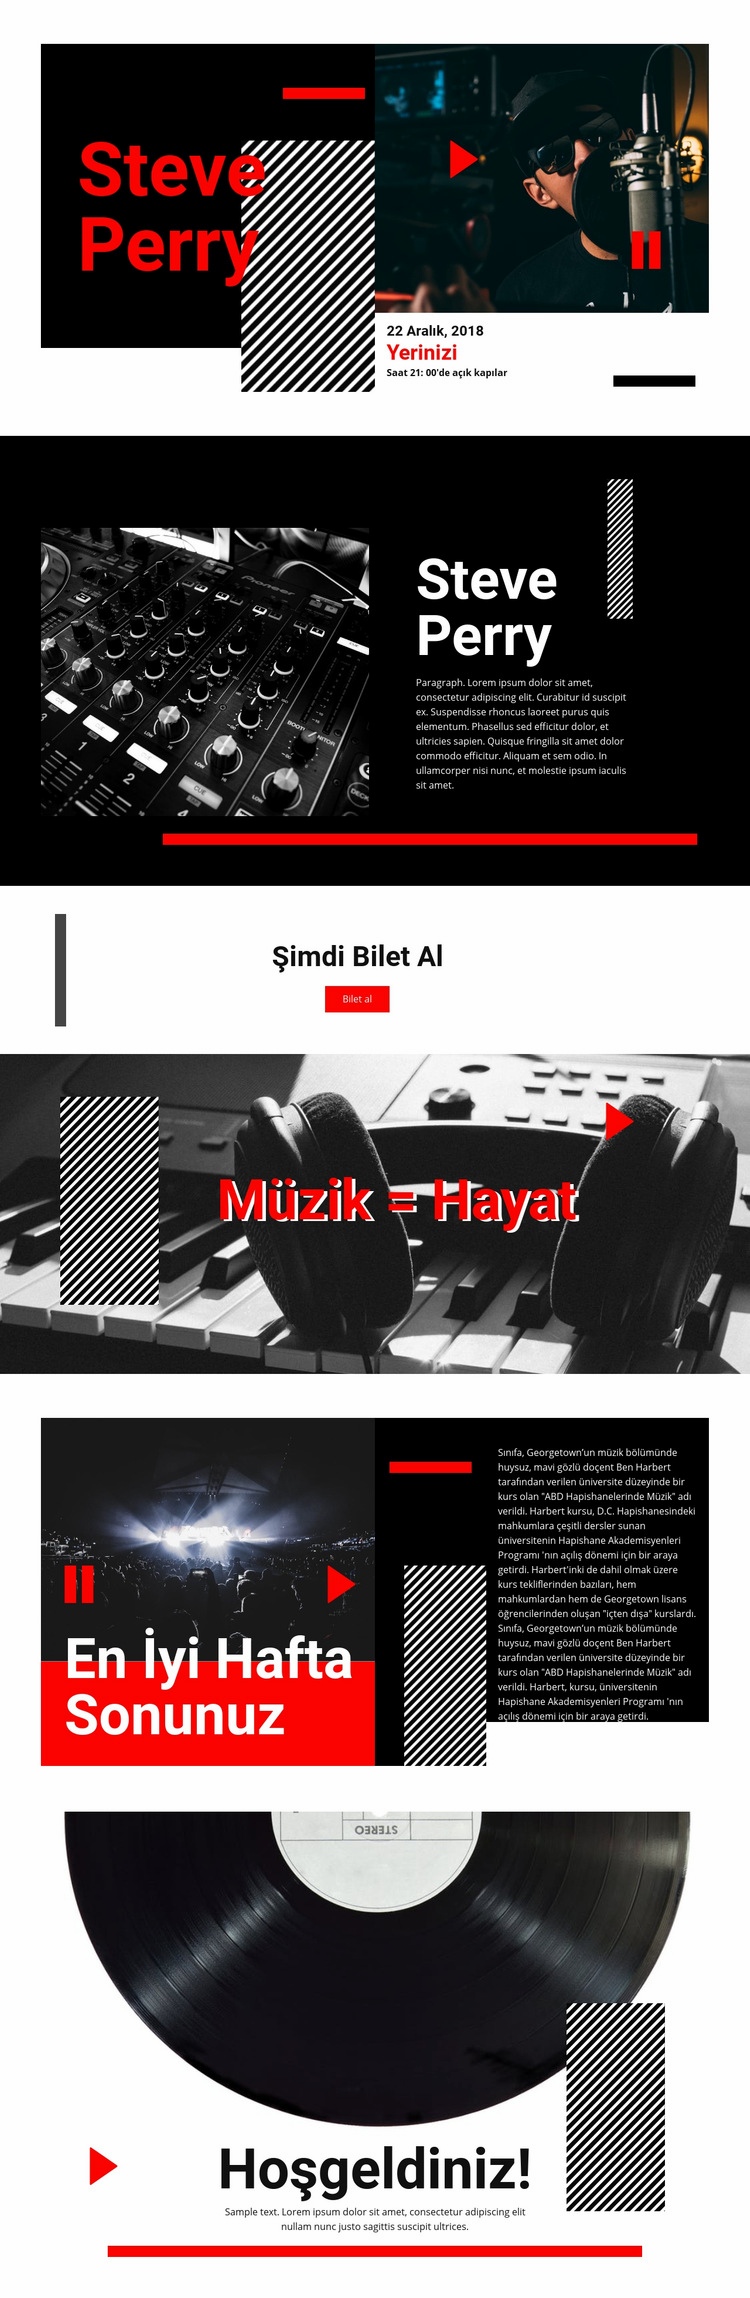 En kaliteli müzik Web Sitesi Mockup'ı